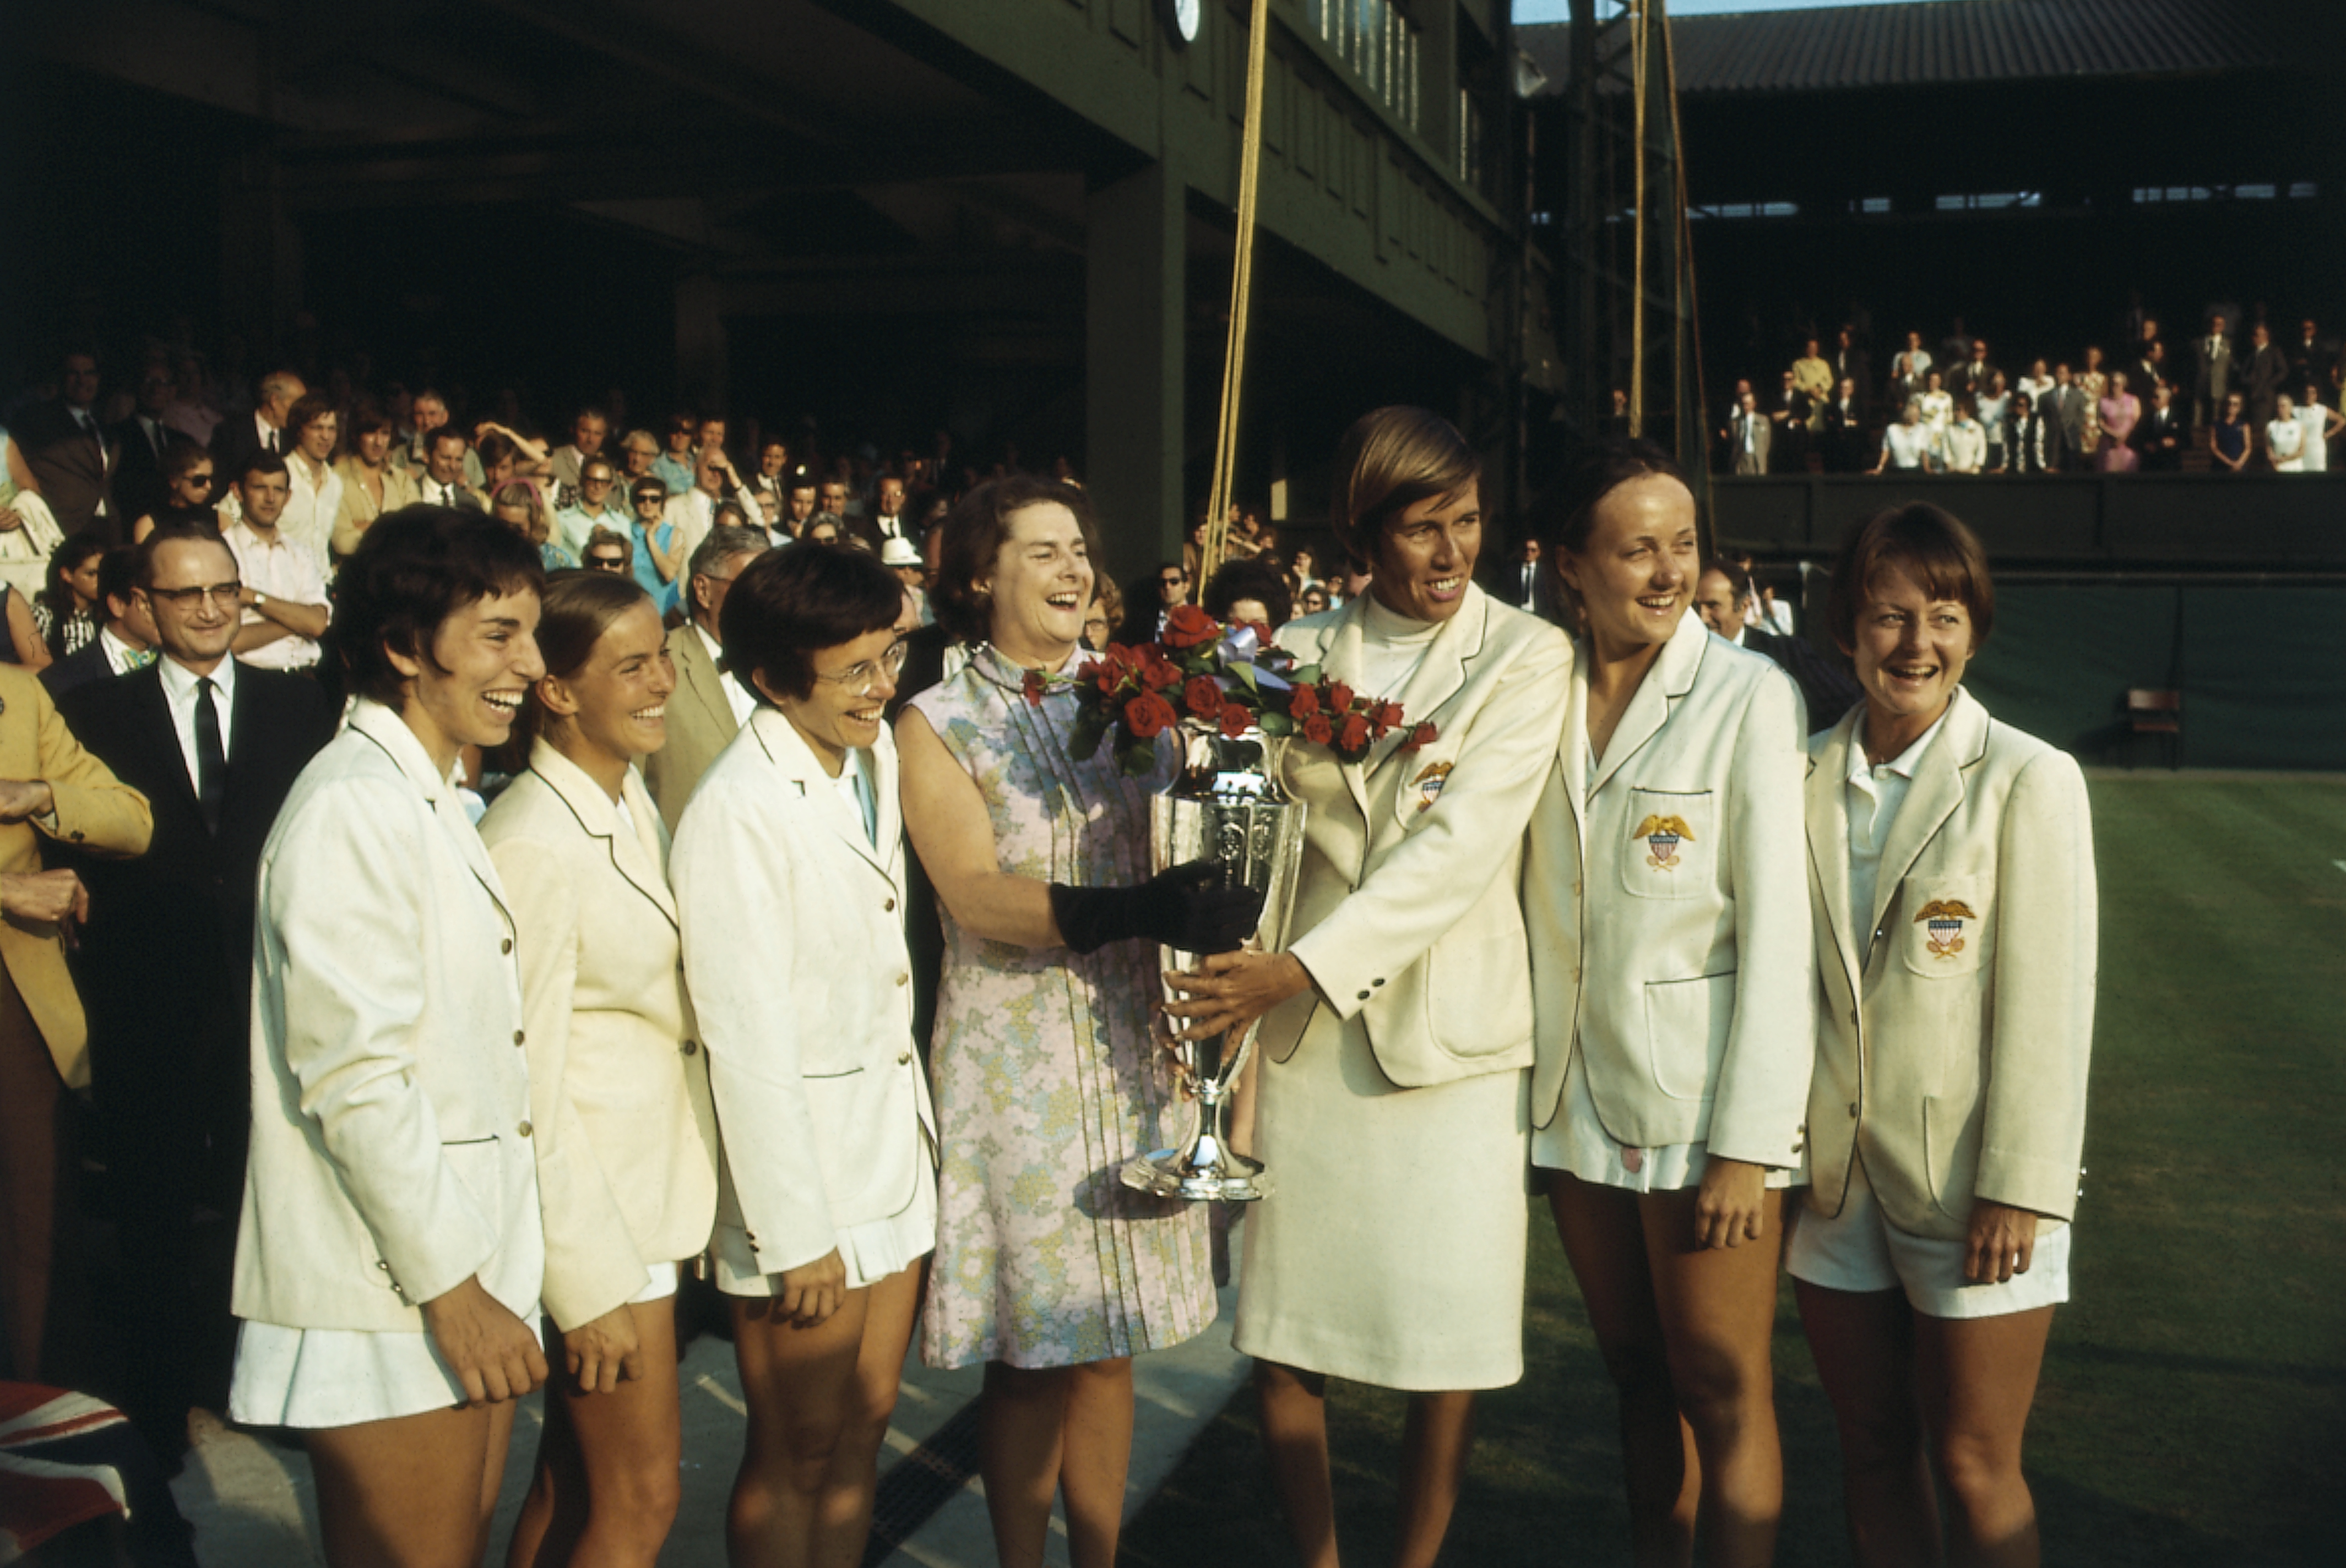 Az amerikai Wightman-kupa csapat tagjai a trófeával, amelyet a brit csapat elleni mérkőzés után nyertek Wimbledonban. Balról jobbra: Julie Heldman, Nancy Richey, Doris Hart Mary Ann Curtis, Billie Jean King és Peaches Bartkowicz.